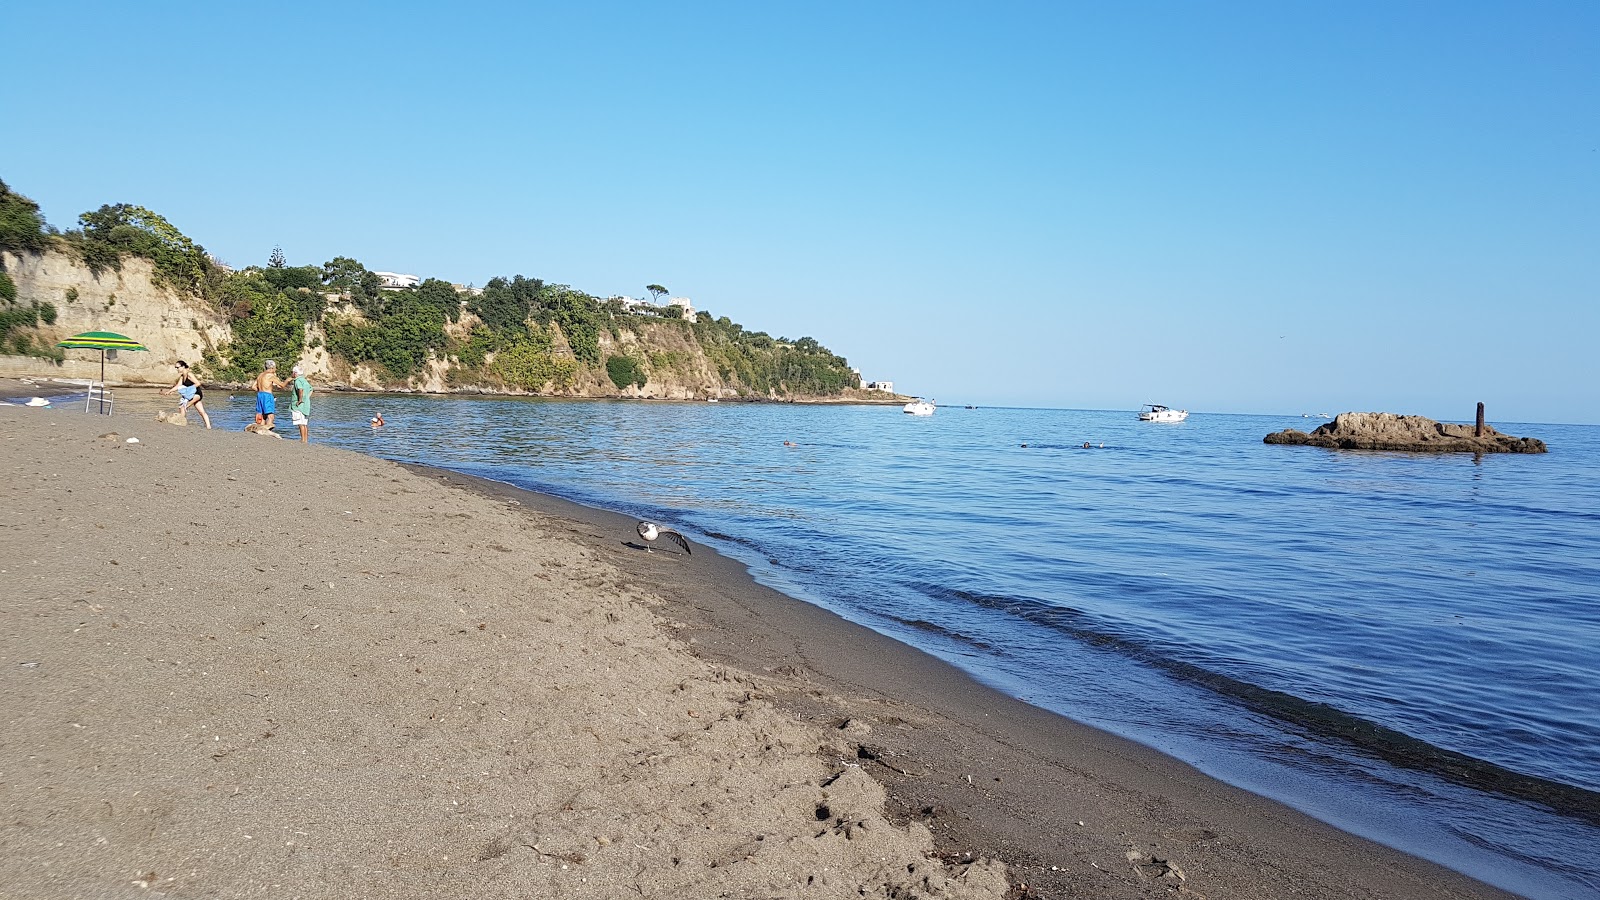 Foto van Spiaggia di Silurenza met ruime baai